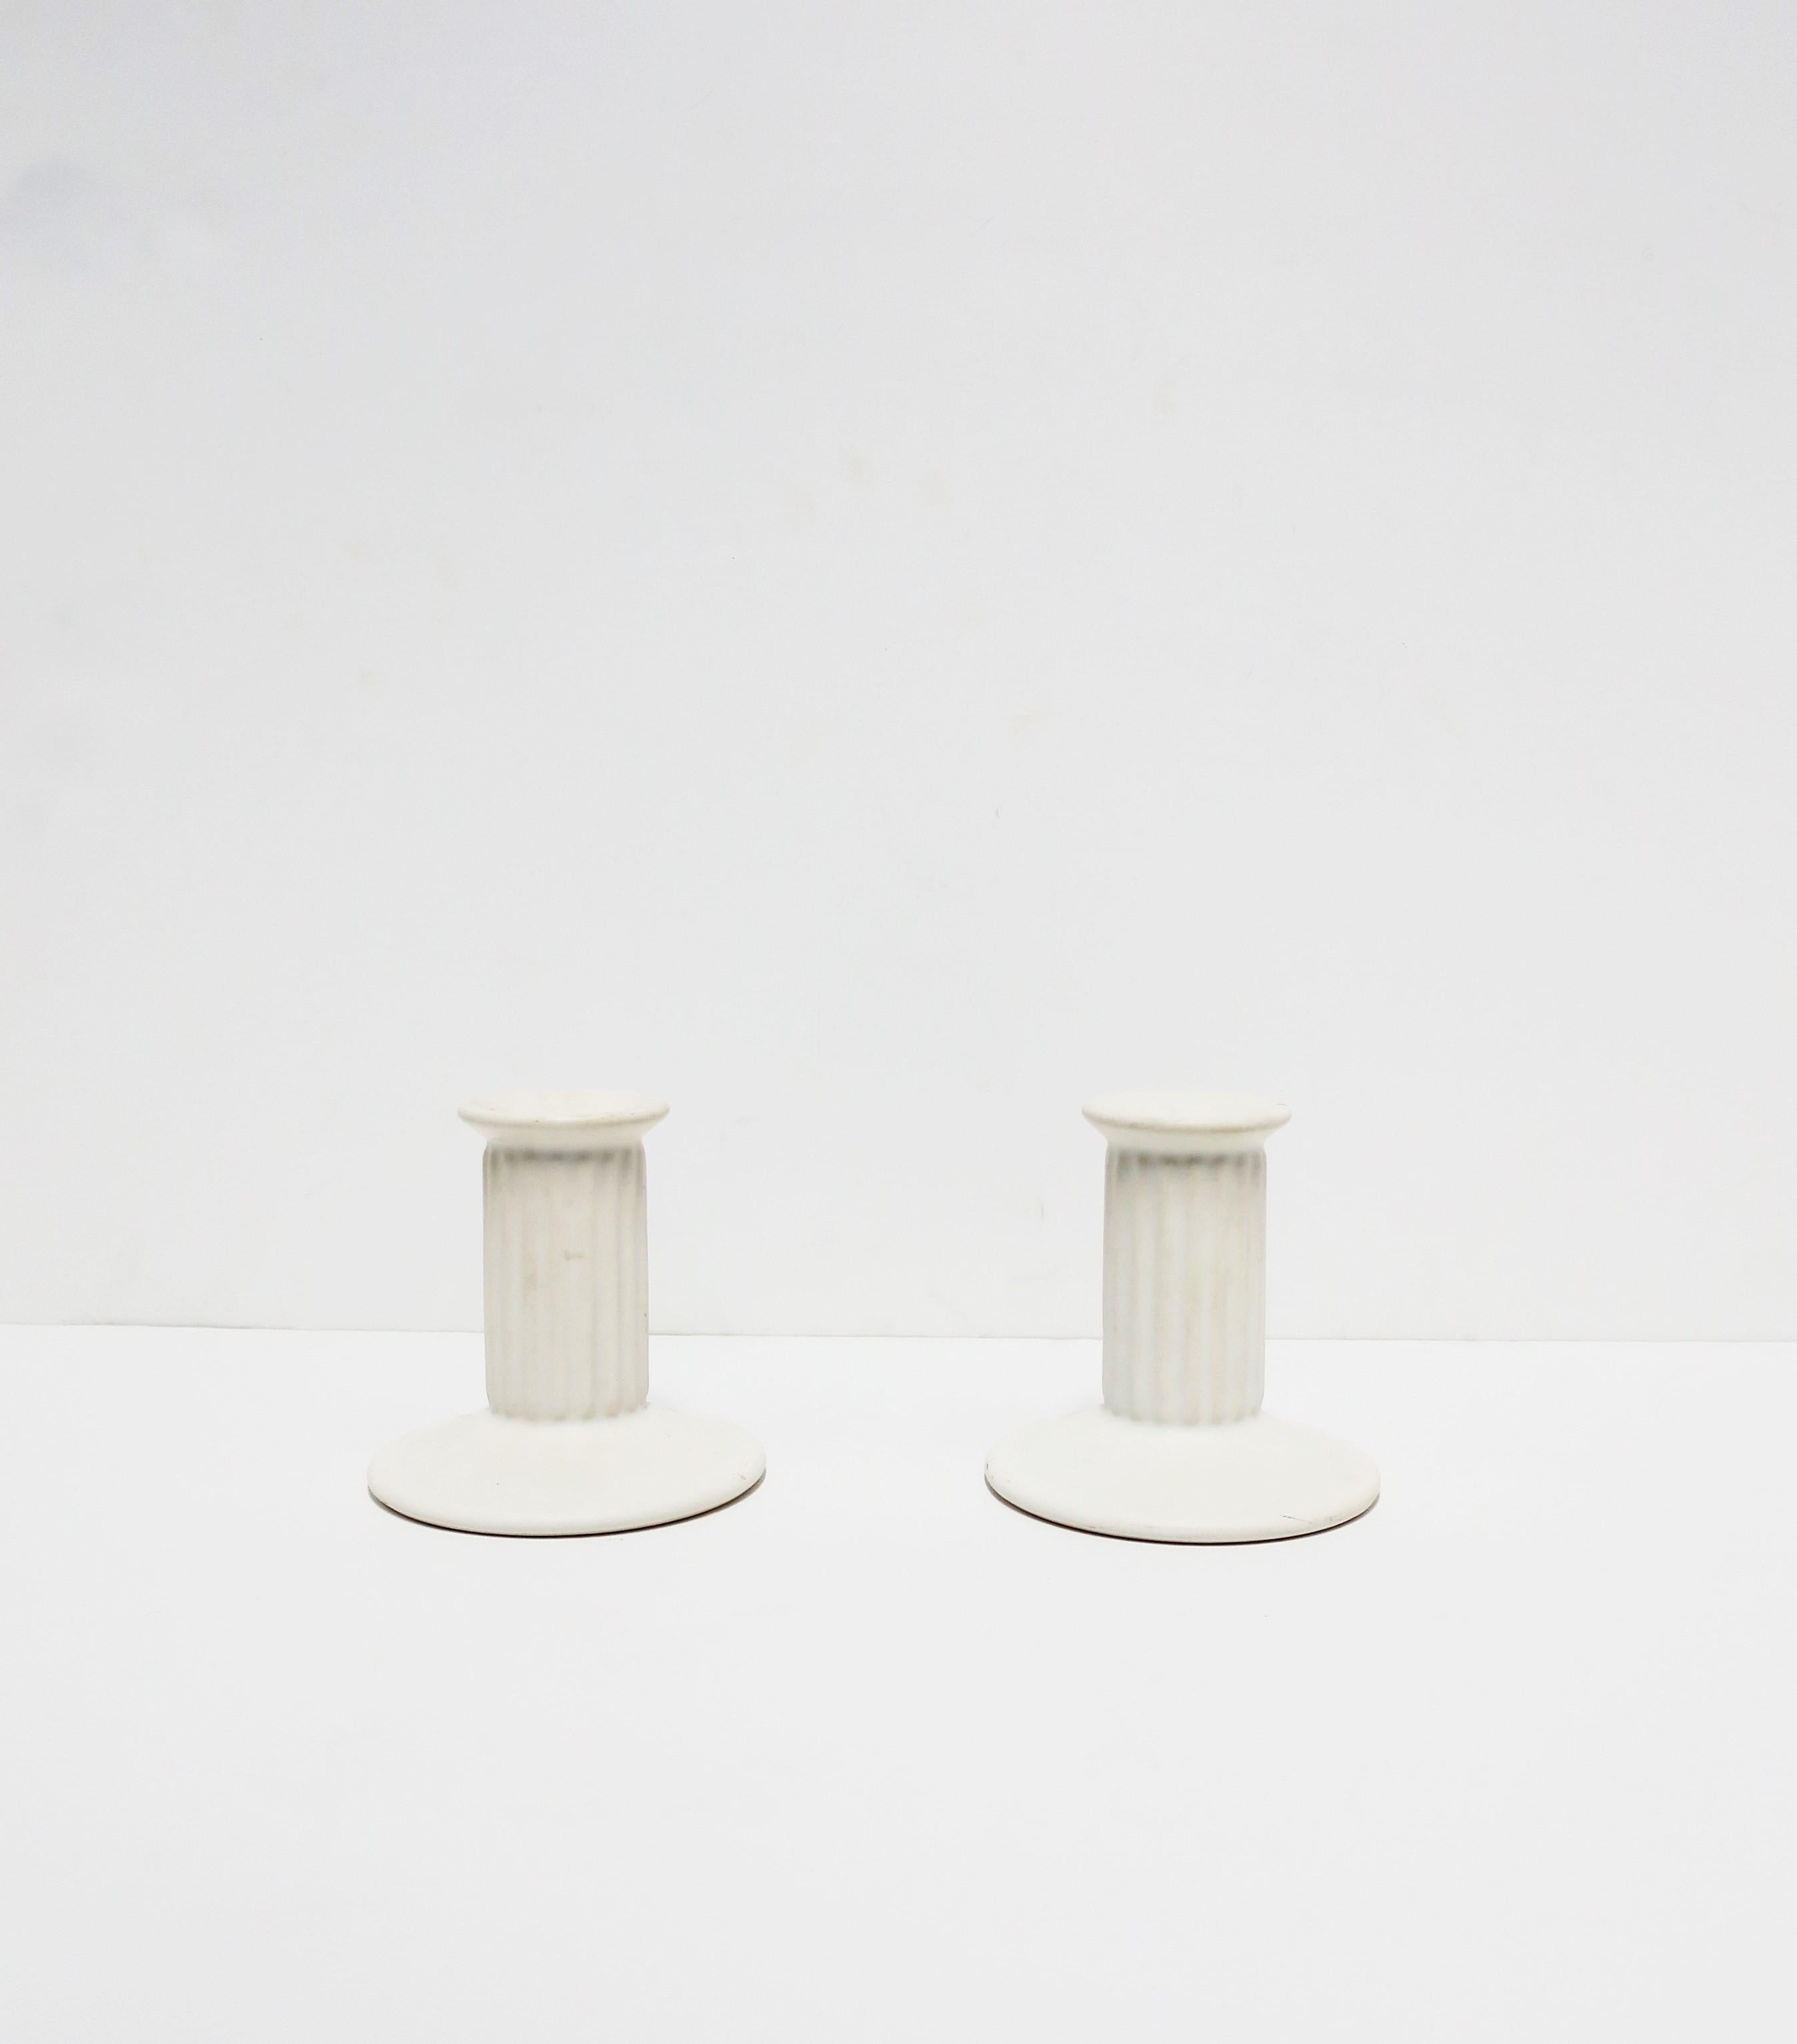 Ein Vintage-Paar weißer, matter Keramik-Kerzenhalter im neoklassischen Stil, ca. 1960-1970er Jahre. Hergestellt in Portugal. Beide auf der Unterseite markiert, wie im letzten Bild gezeigt. Abmessungen: 4,5